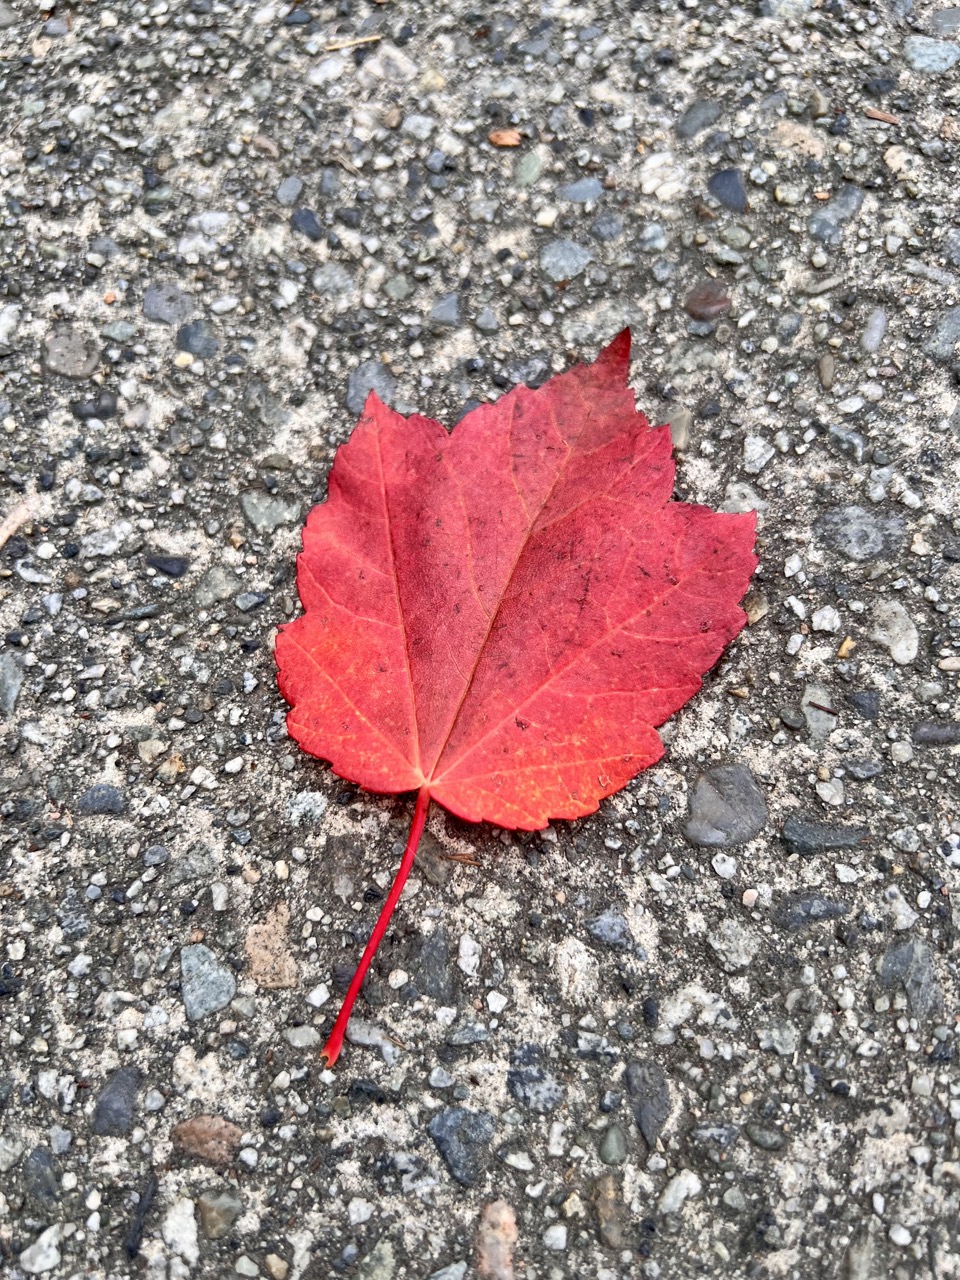 땅에 떨어진 단풍나무 잎이 예뻐서 찍어봤다. 이걸로 메이플 시럽이 만들어지는건가?